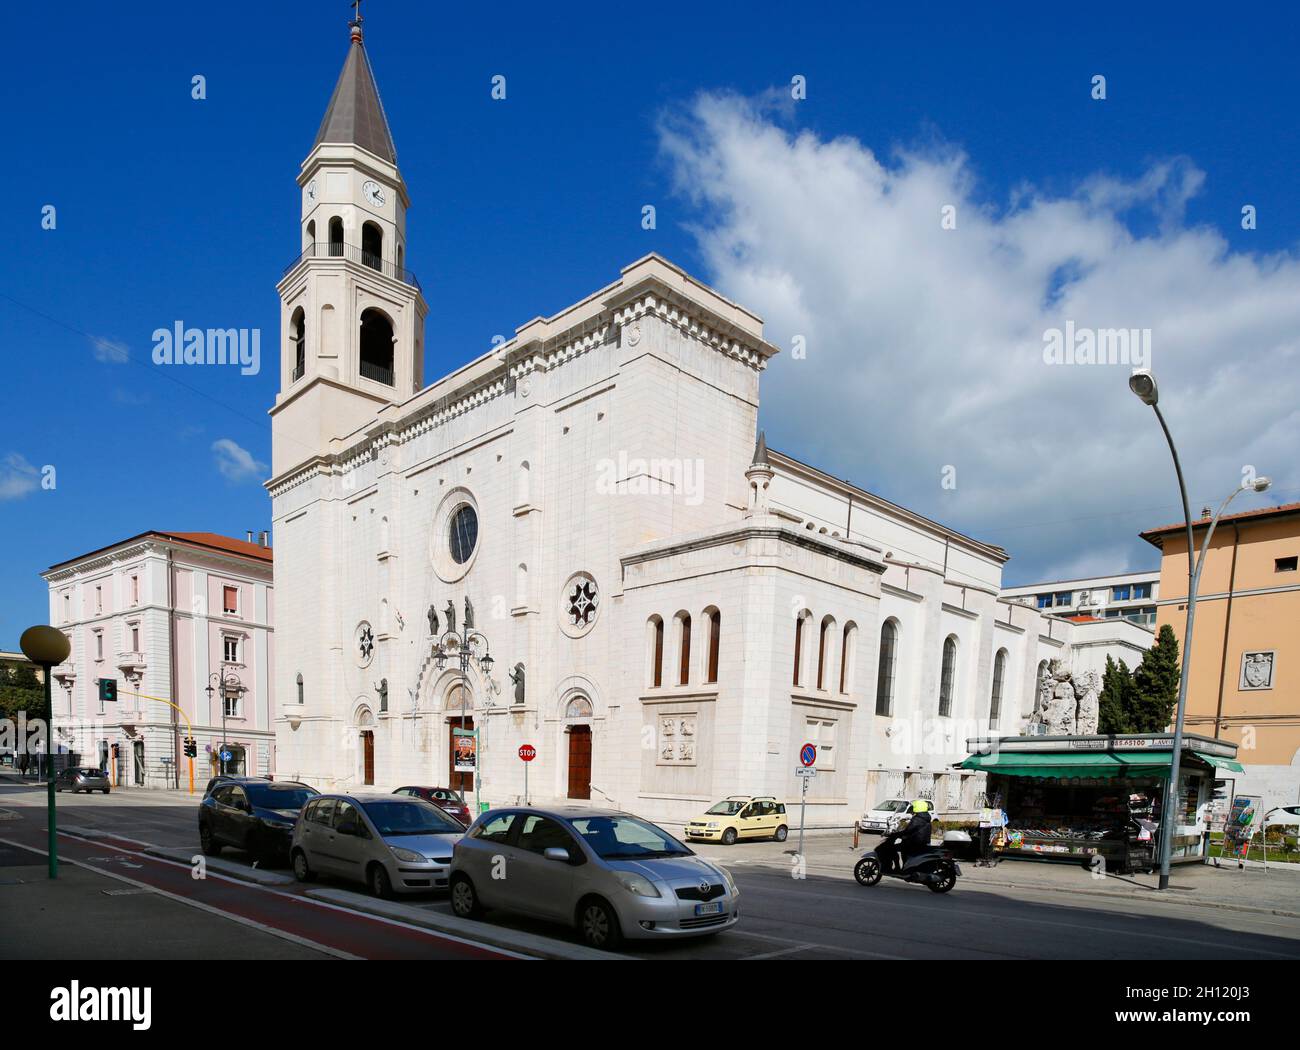 Pescara, Abruzzo, Italia. Cattedrale di San Cetteo o Cattedrale di San Cetteo, patrono di Pescara. Foto Stock